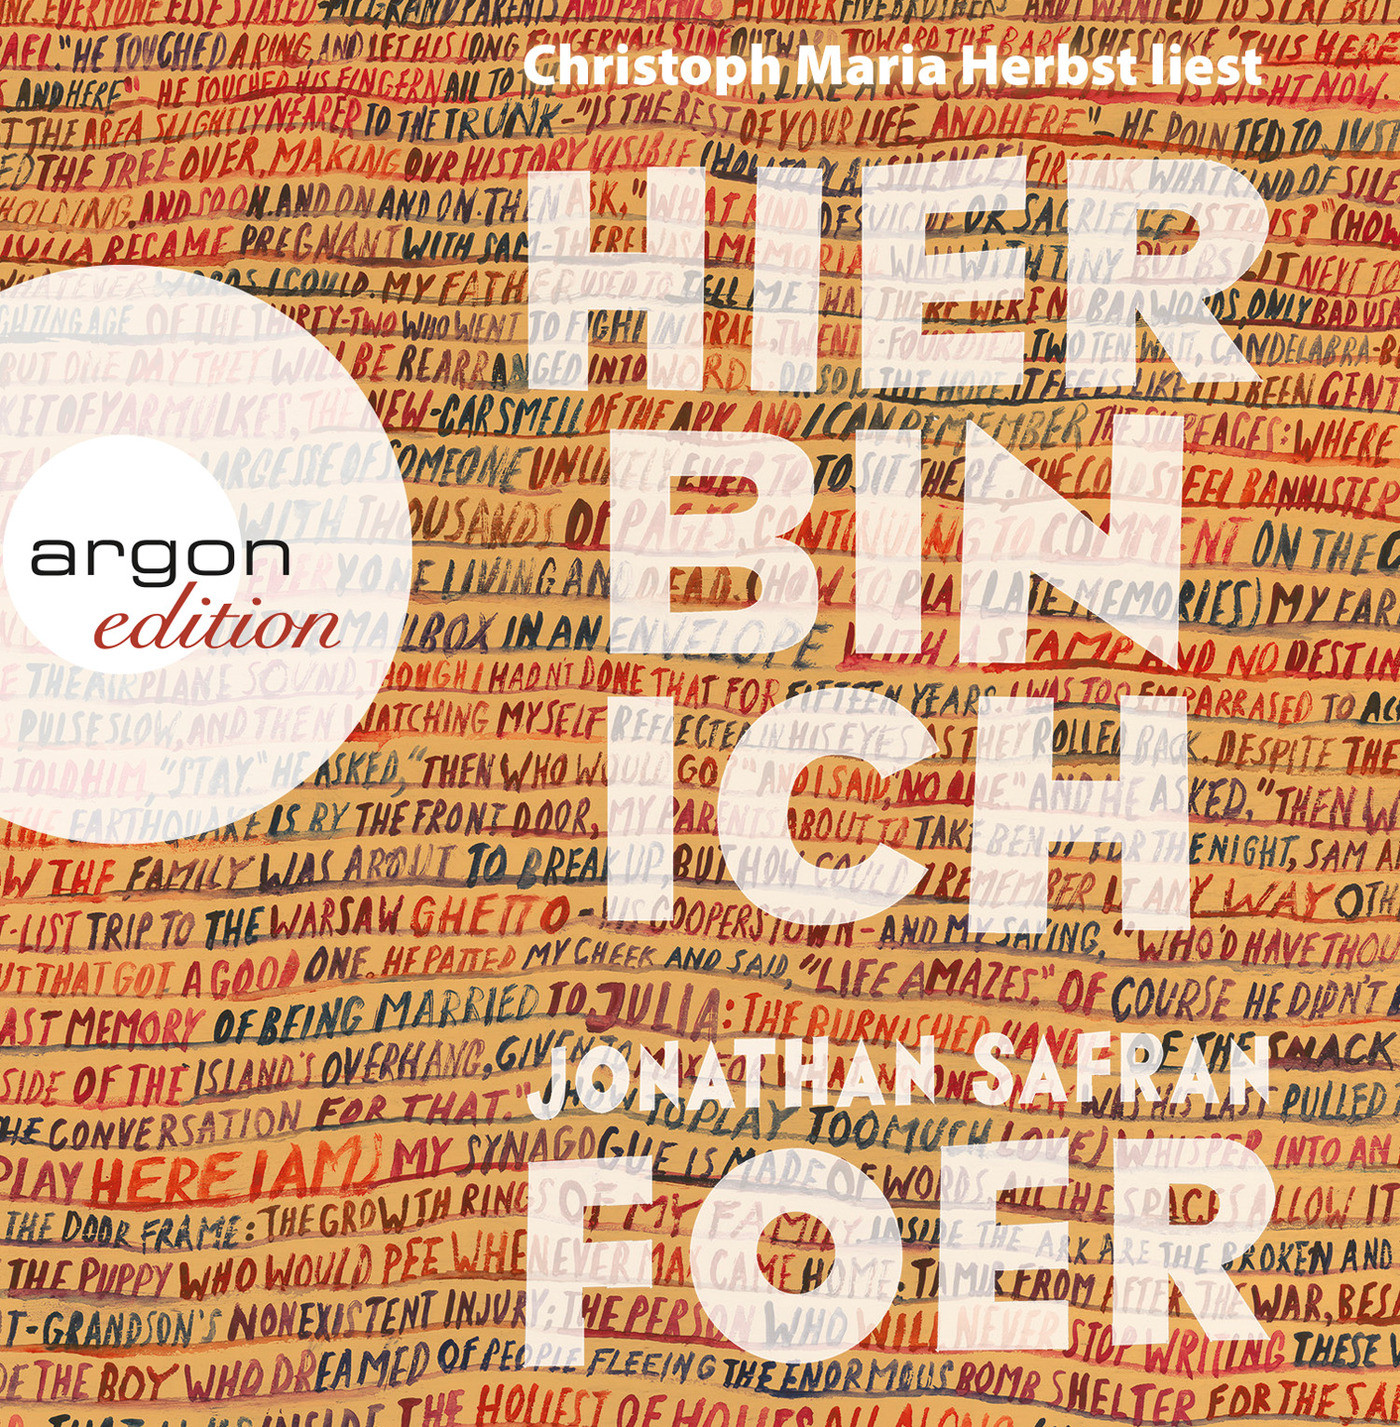 Jonathan Safran Foer - Hier bin ich